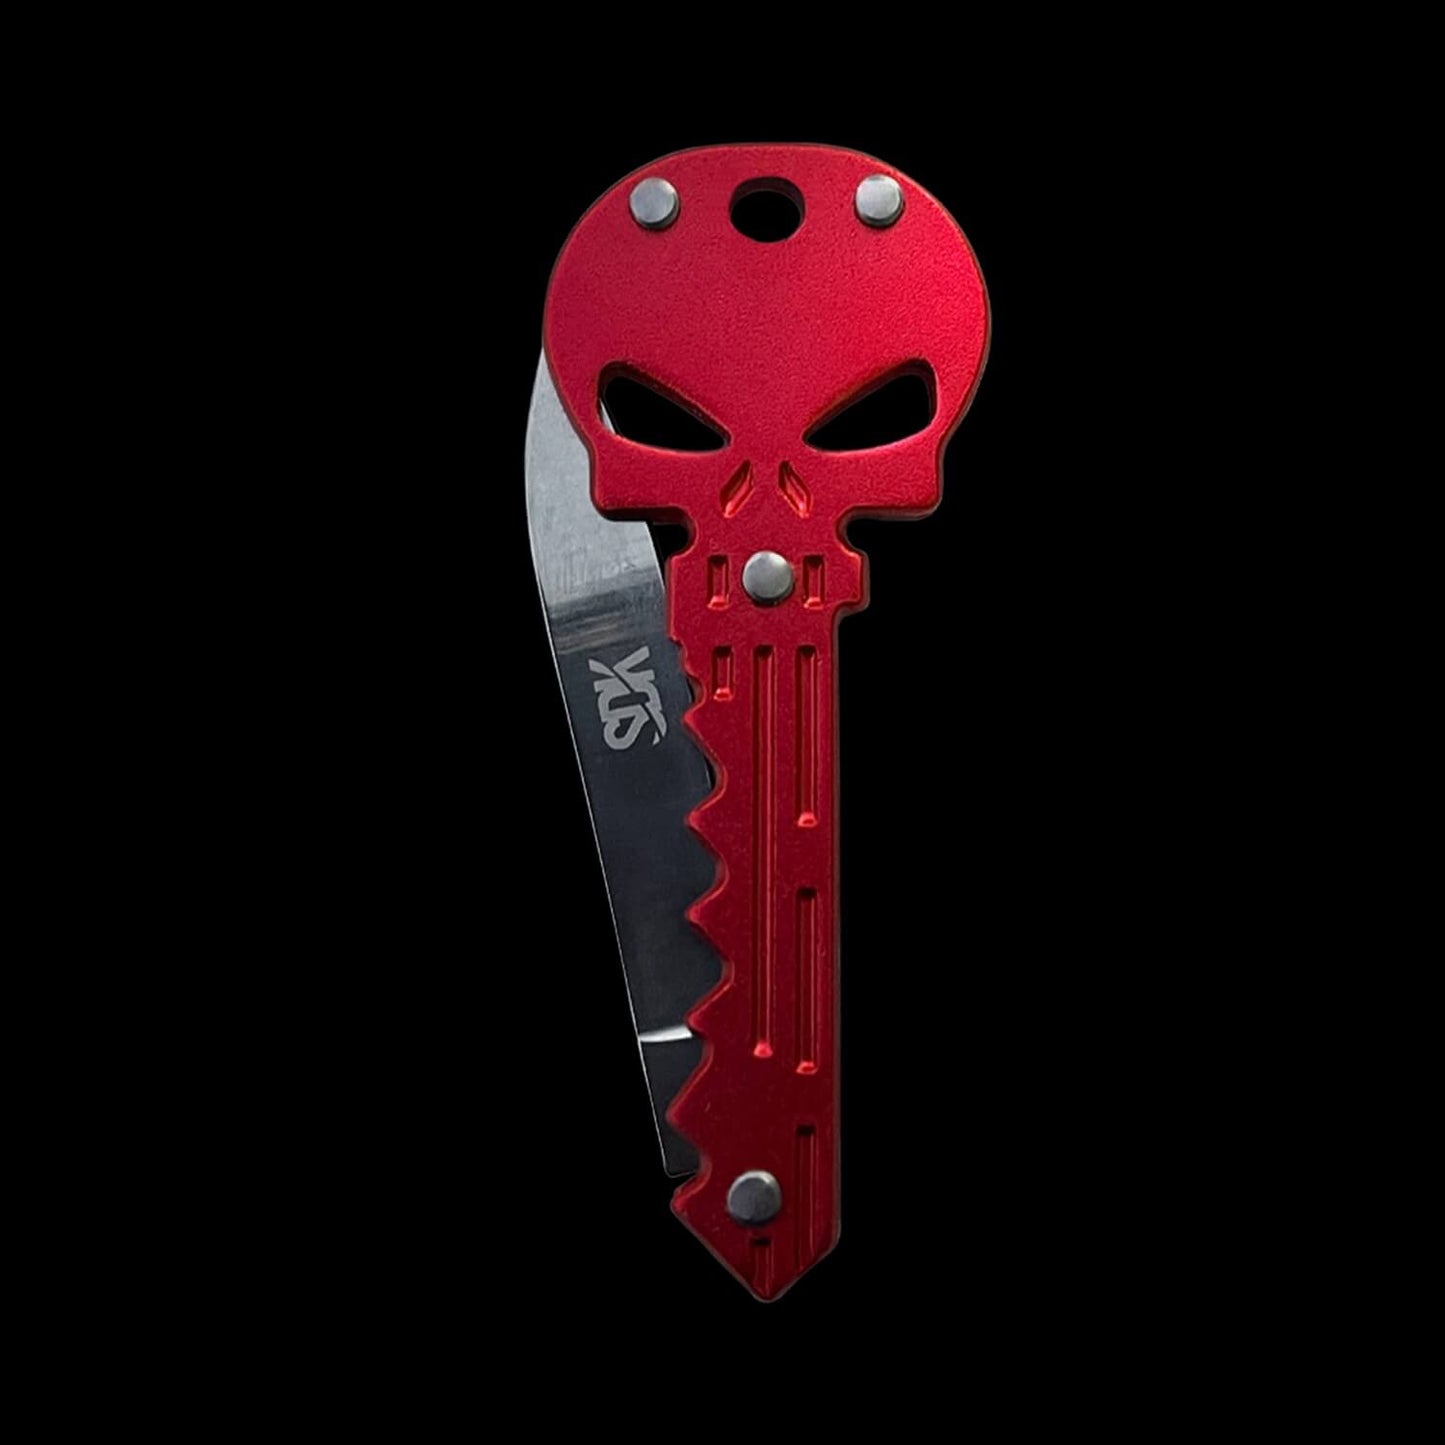 SDK Skull Knife Red (stainless steel skull-shaped flip knife)